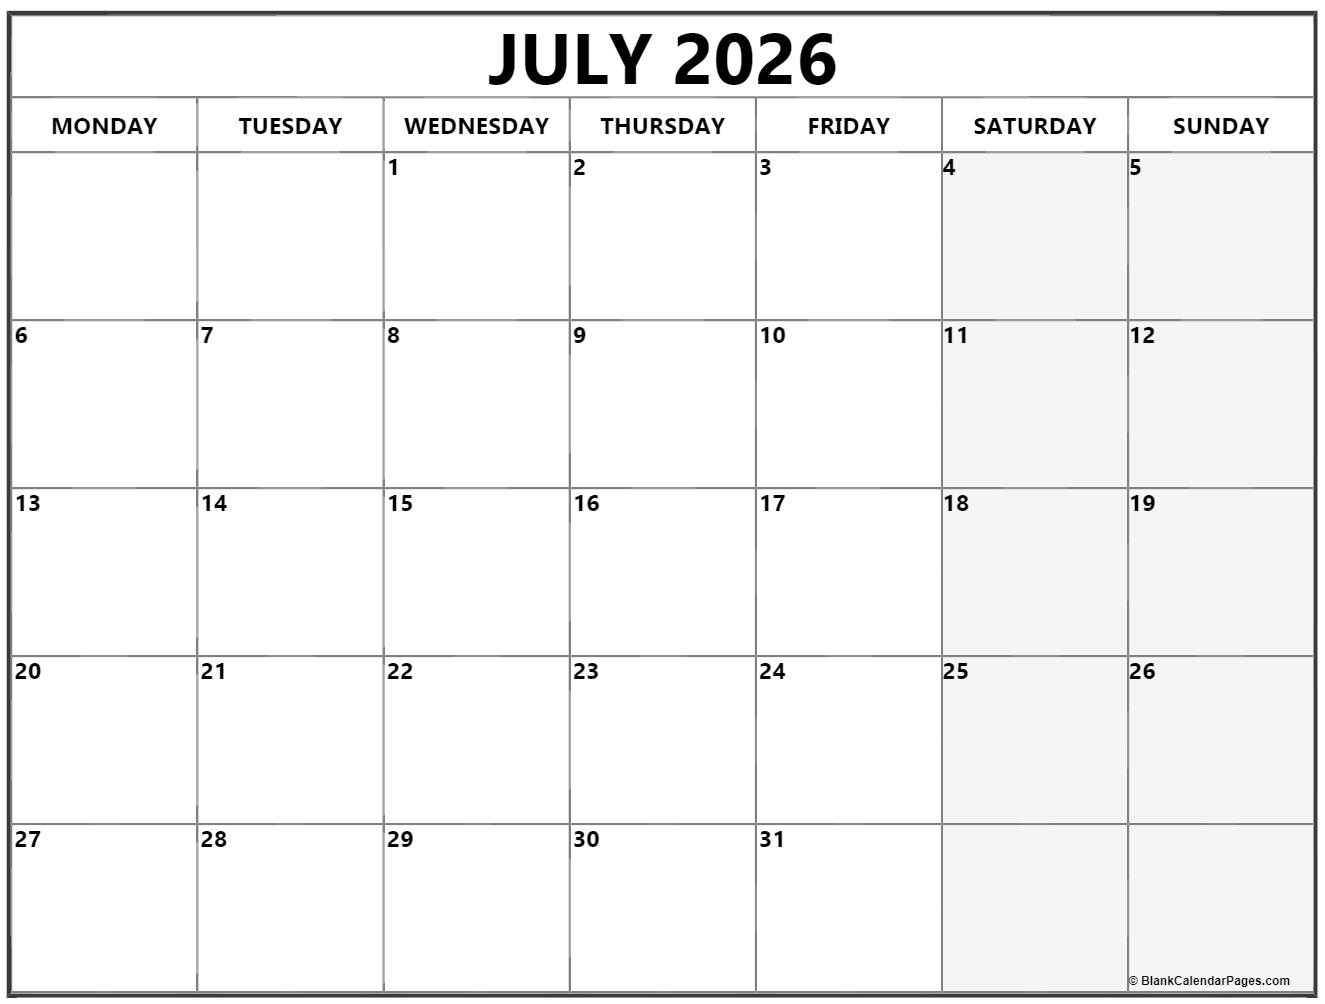 July 2026 Monday calendar. Monday to Sunday